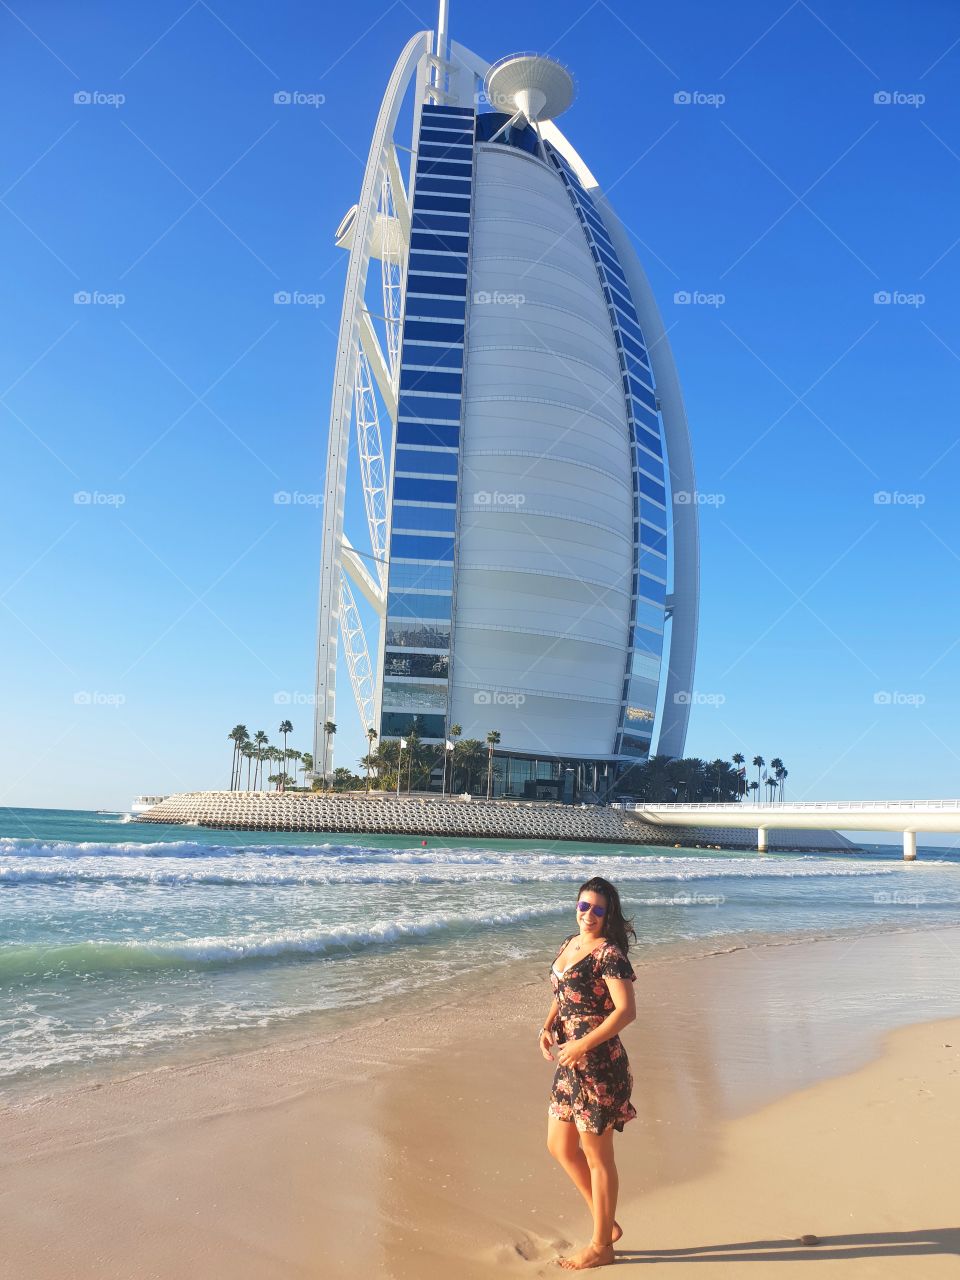 📍Burj Al Arab - Dubai 🇦🇪